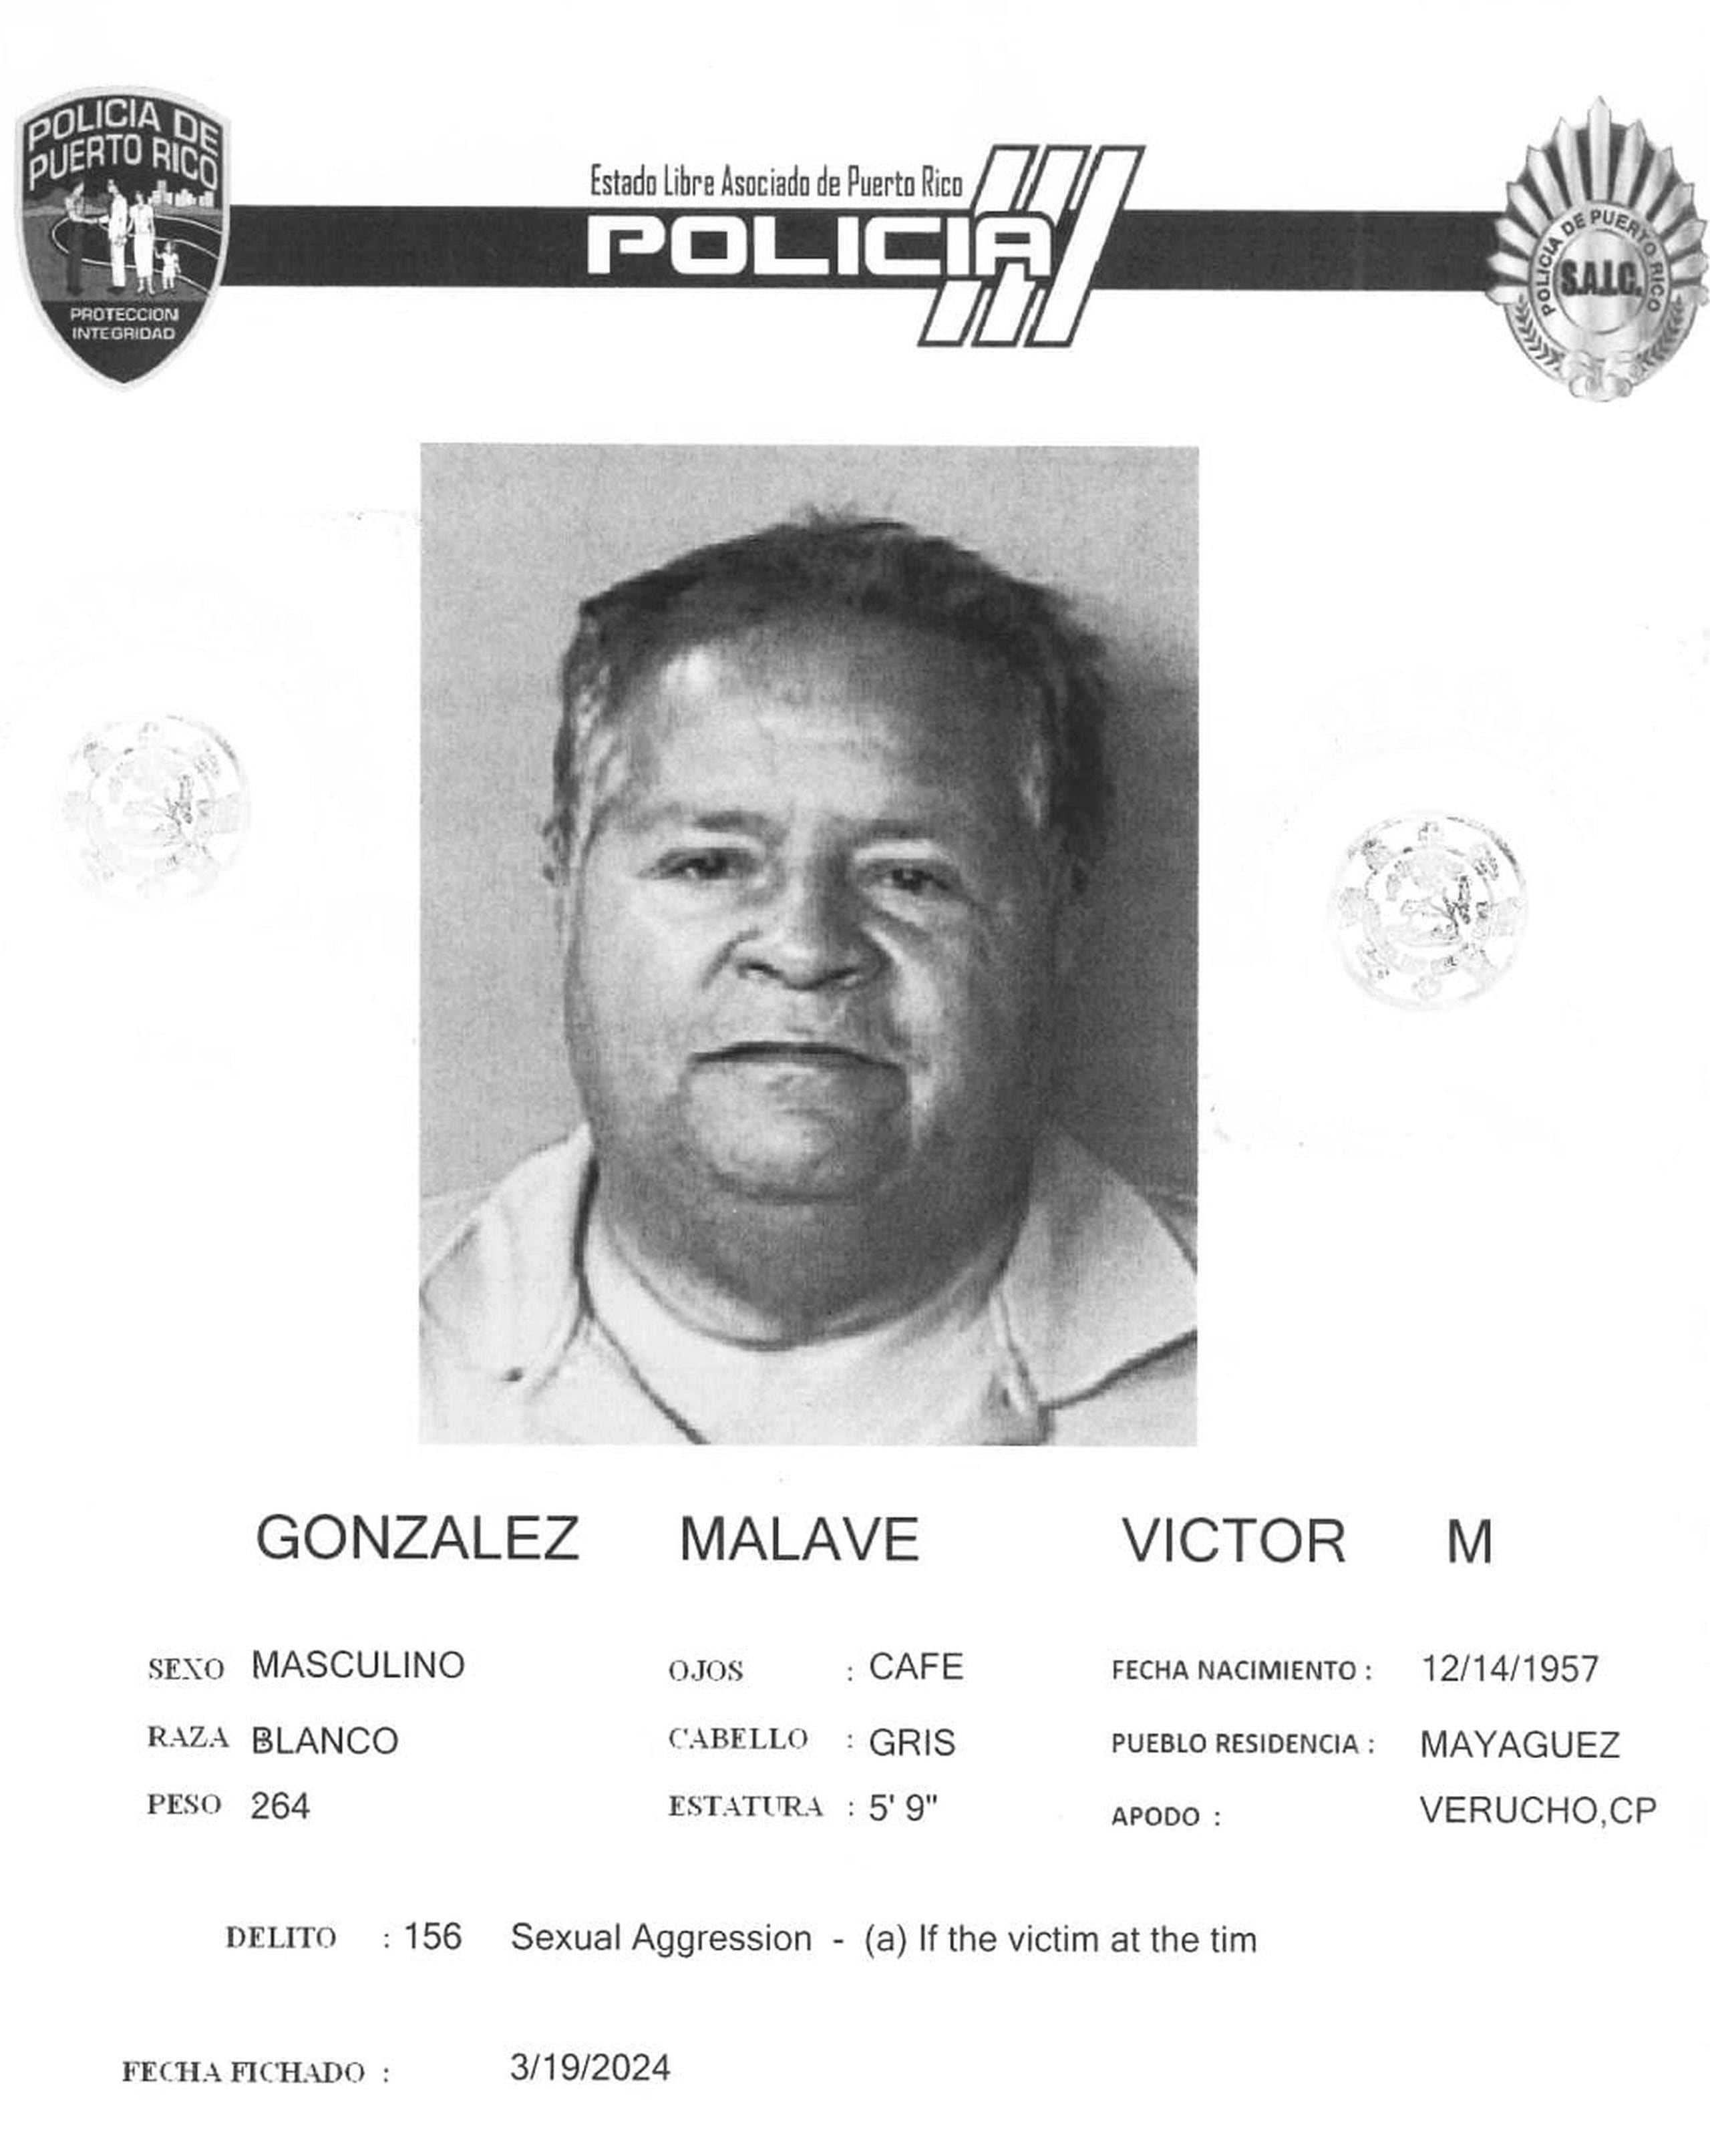 Víctor M. González Malavé enfrenta cargos por agresión sexual, actos lascivos y maltrato de menores.